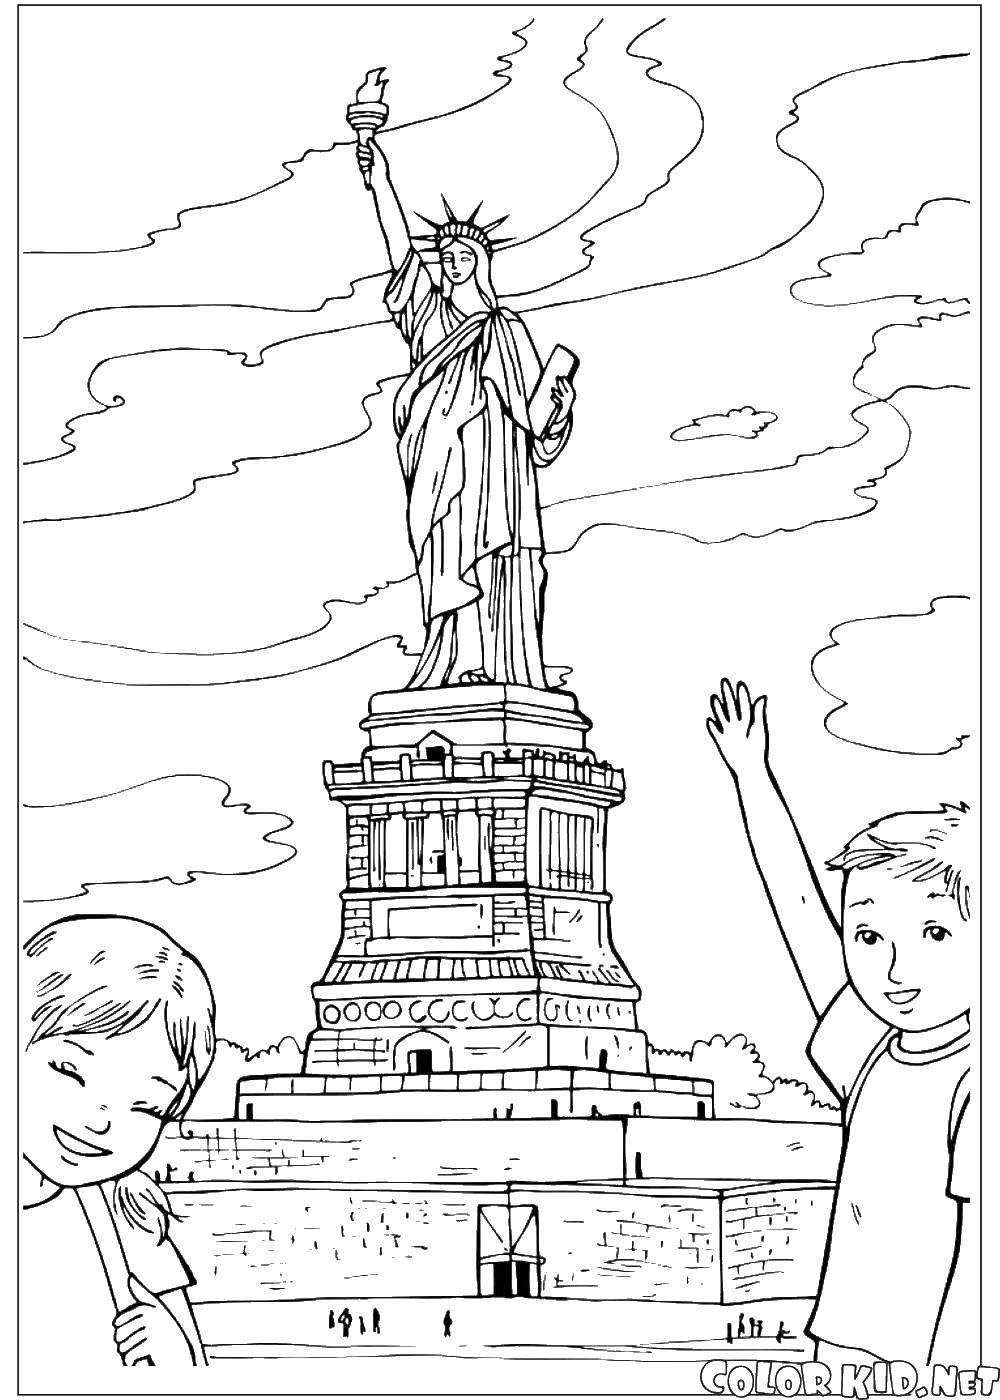 Название: Раскраска Статуя свободы в сша. Категория: статуя свободы. Теги: Америка, США, флаг.